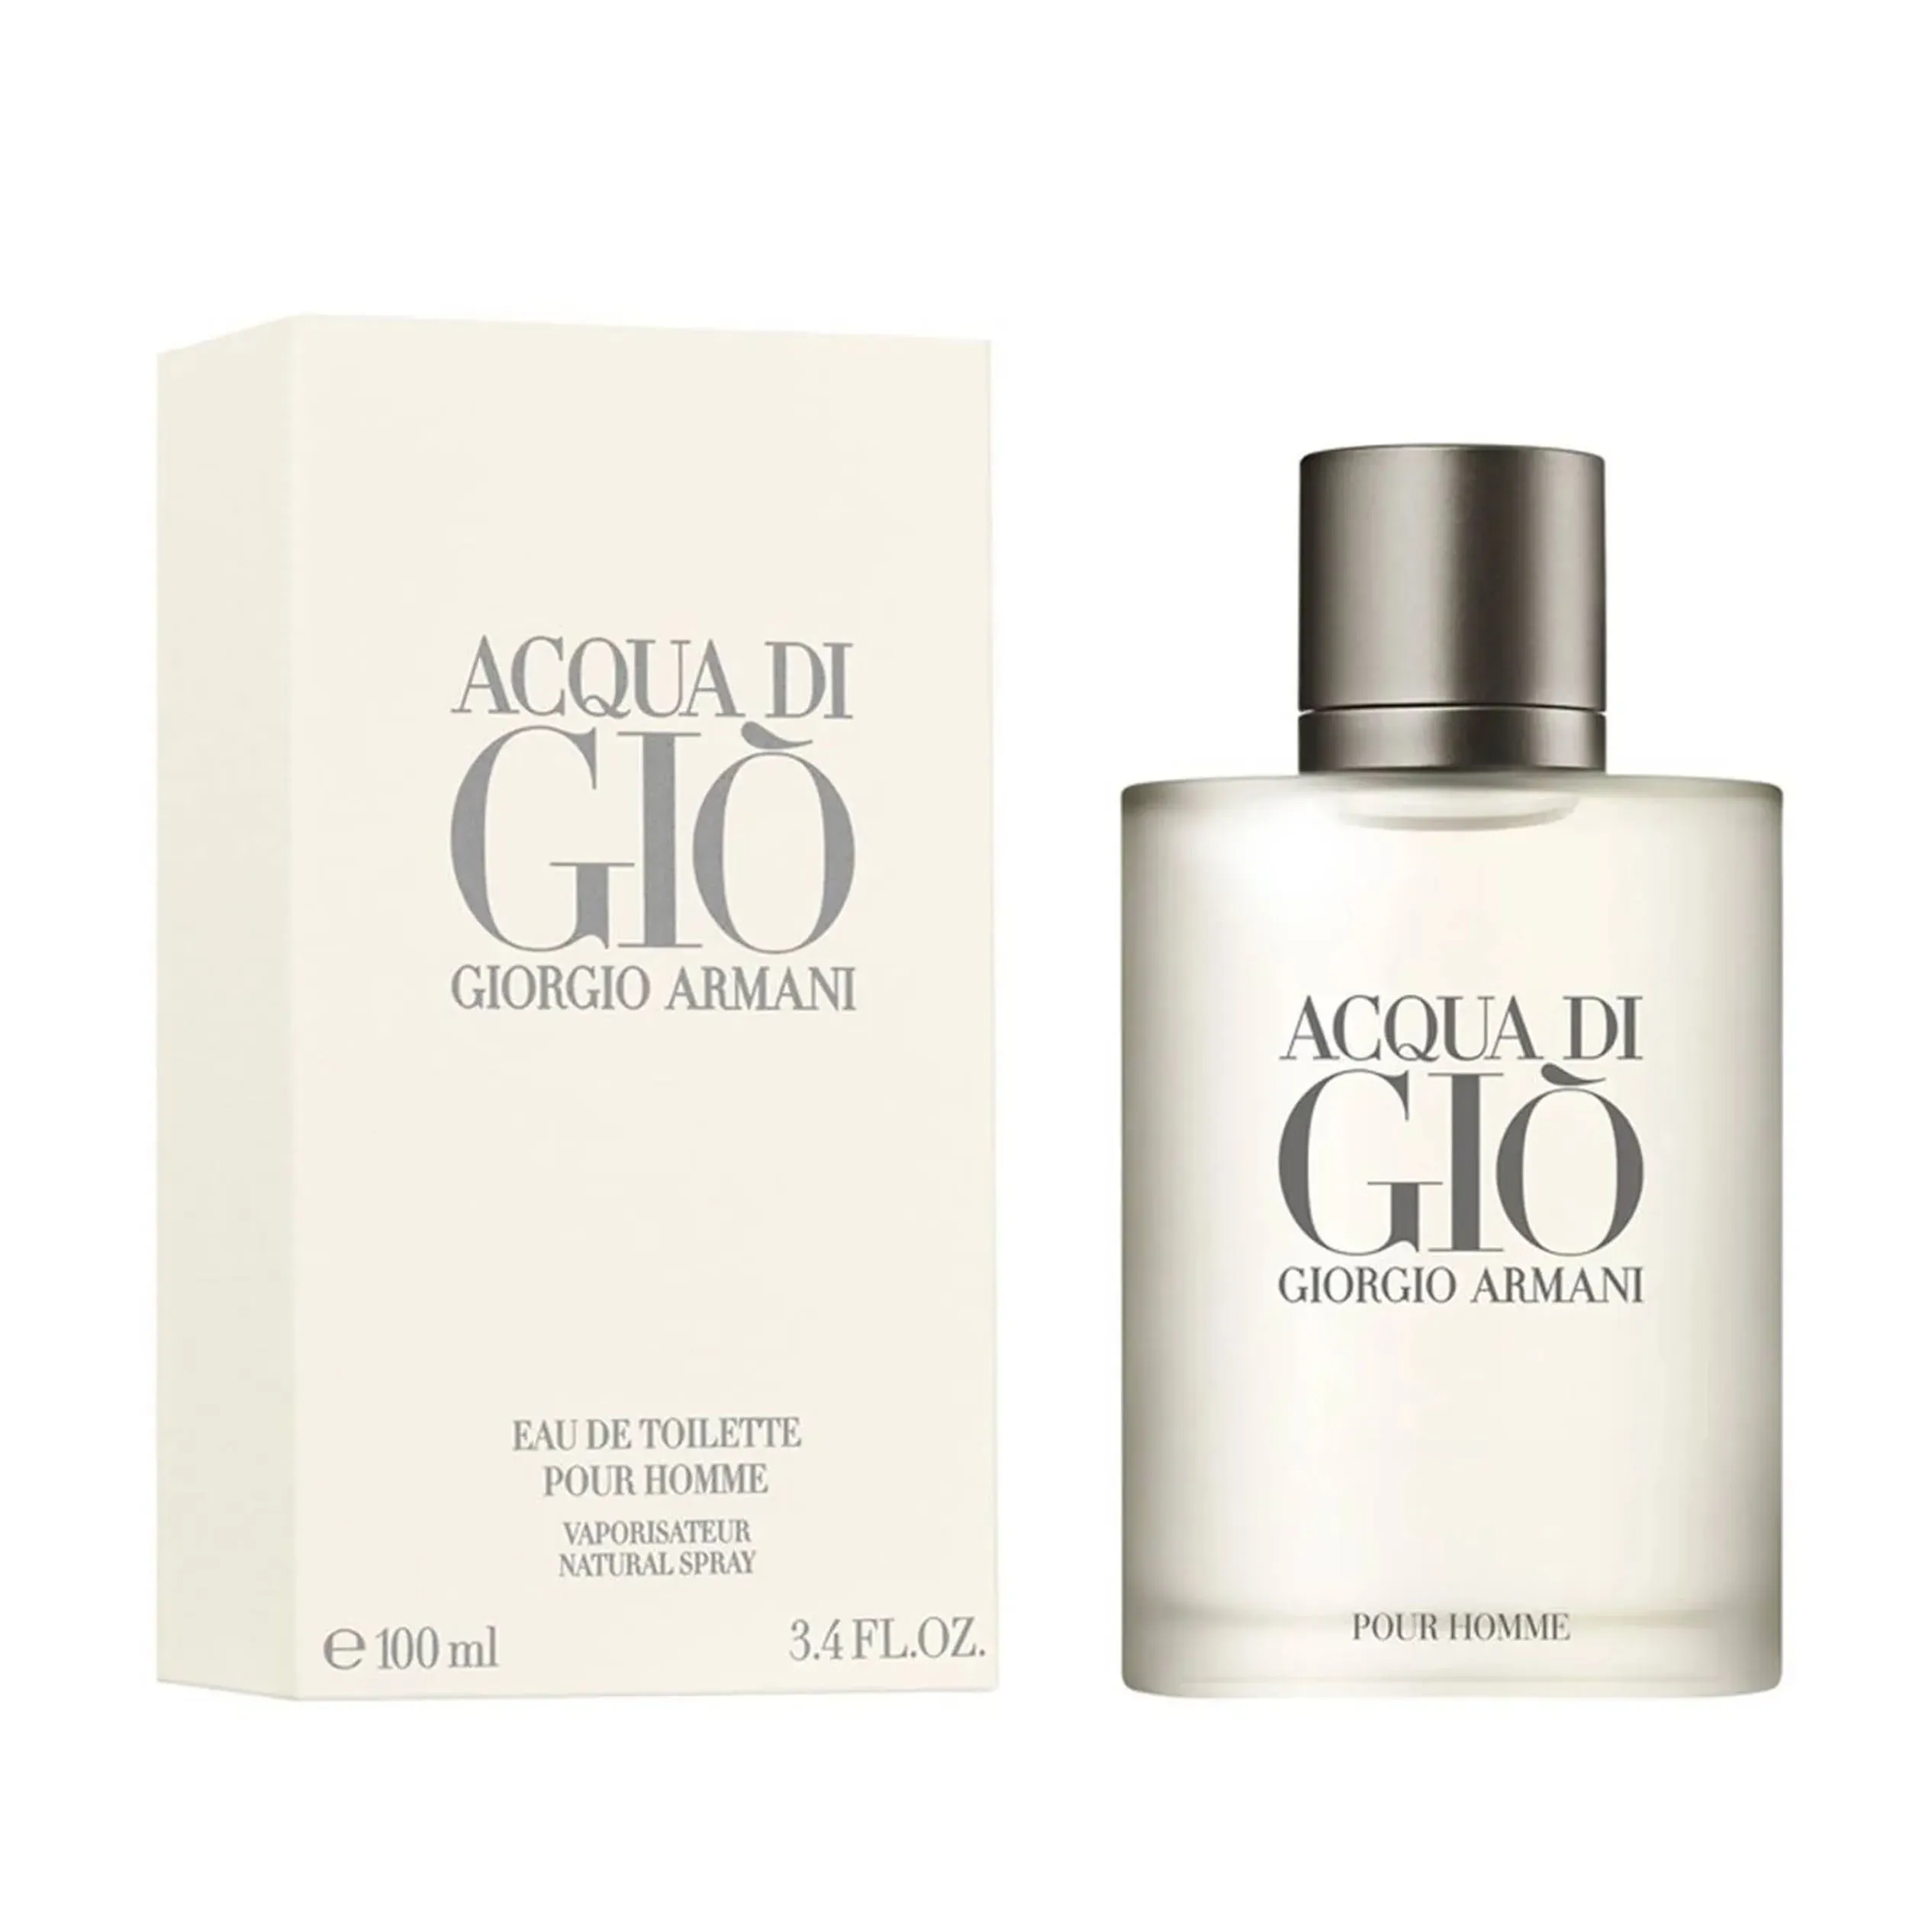 Perfume Acqua di Gio Giorgio Armani (Replica Importada)- Hombre